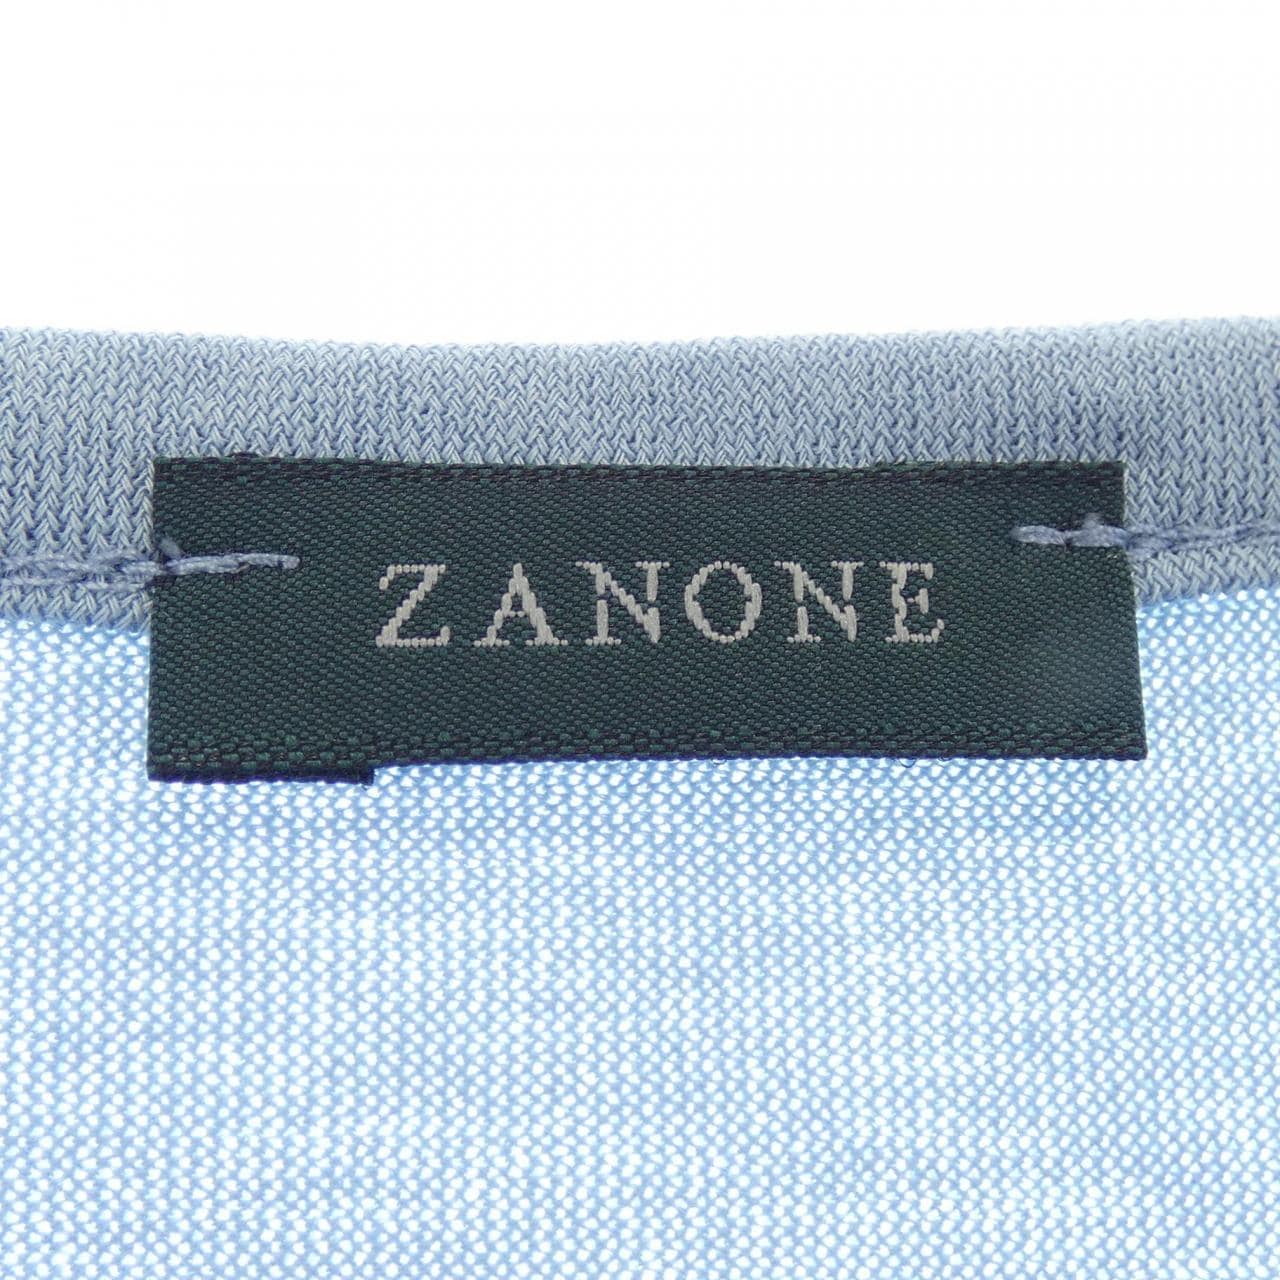 ザノーネ ZANONE Tシャツ